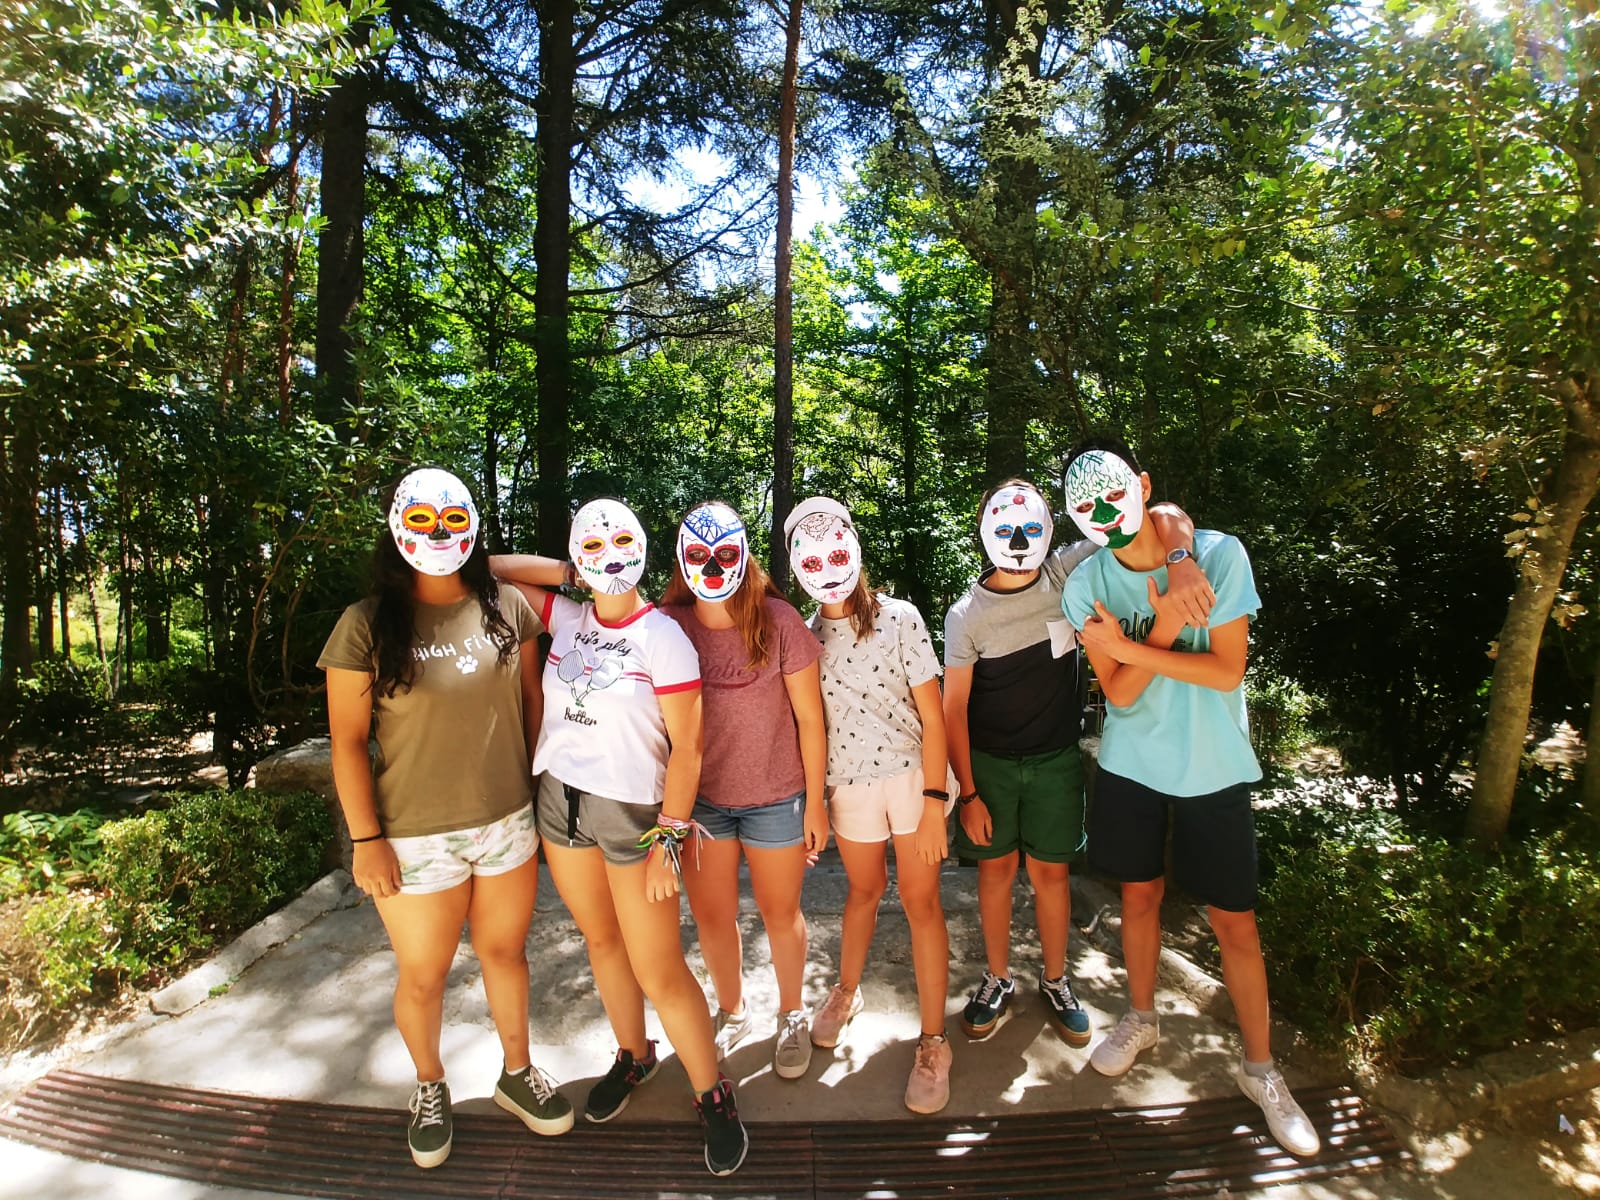 Taller de máscaras. Campamento de verano en Madrid Sierra Guadarrama